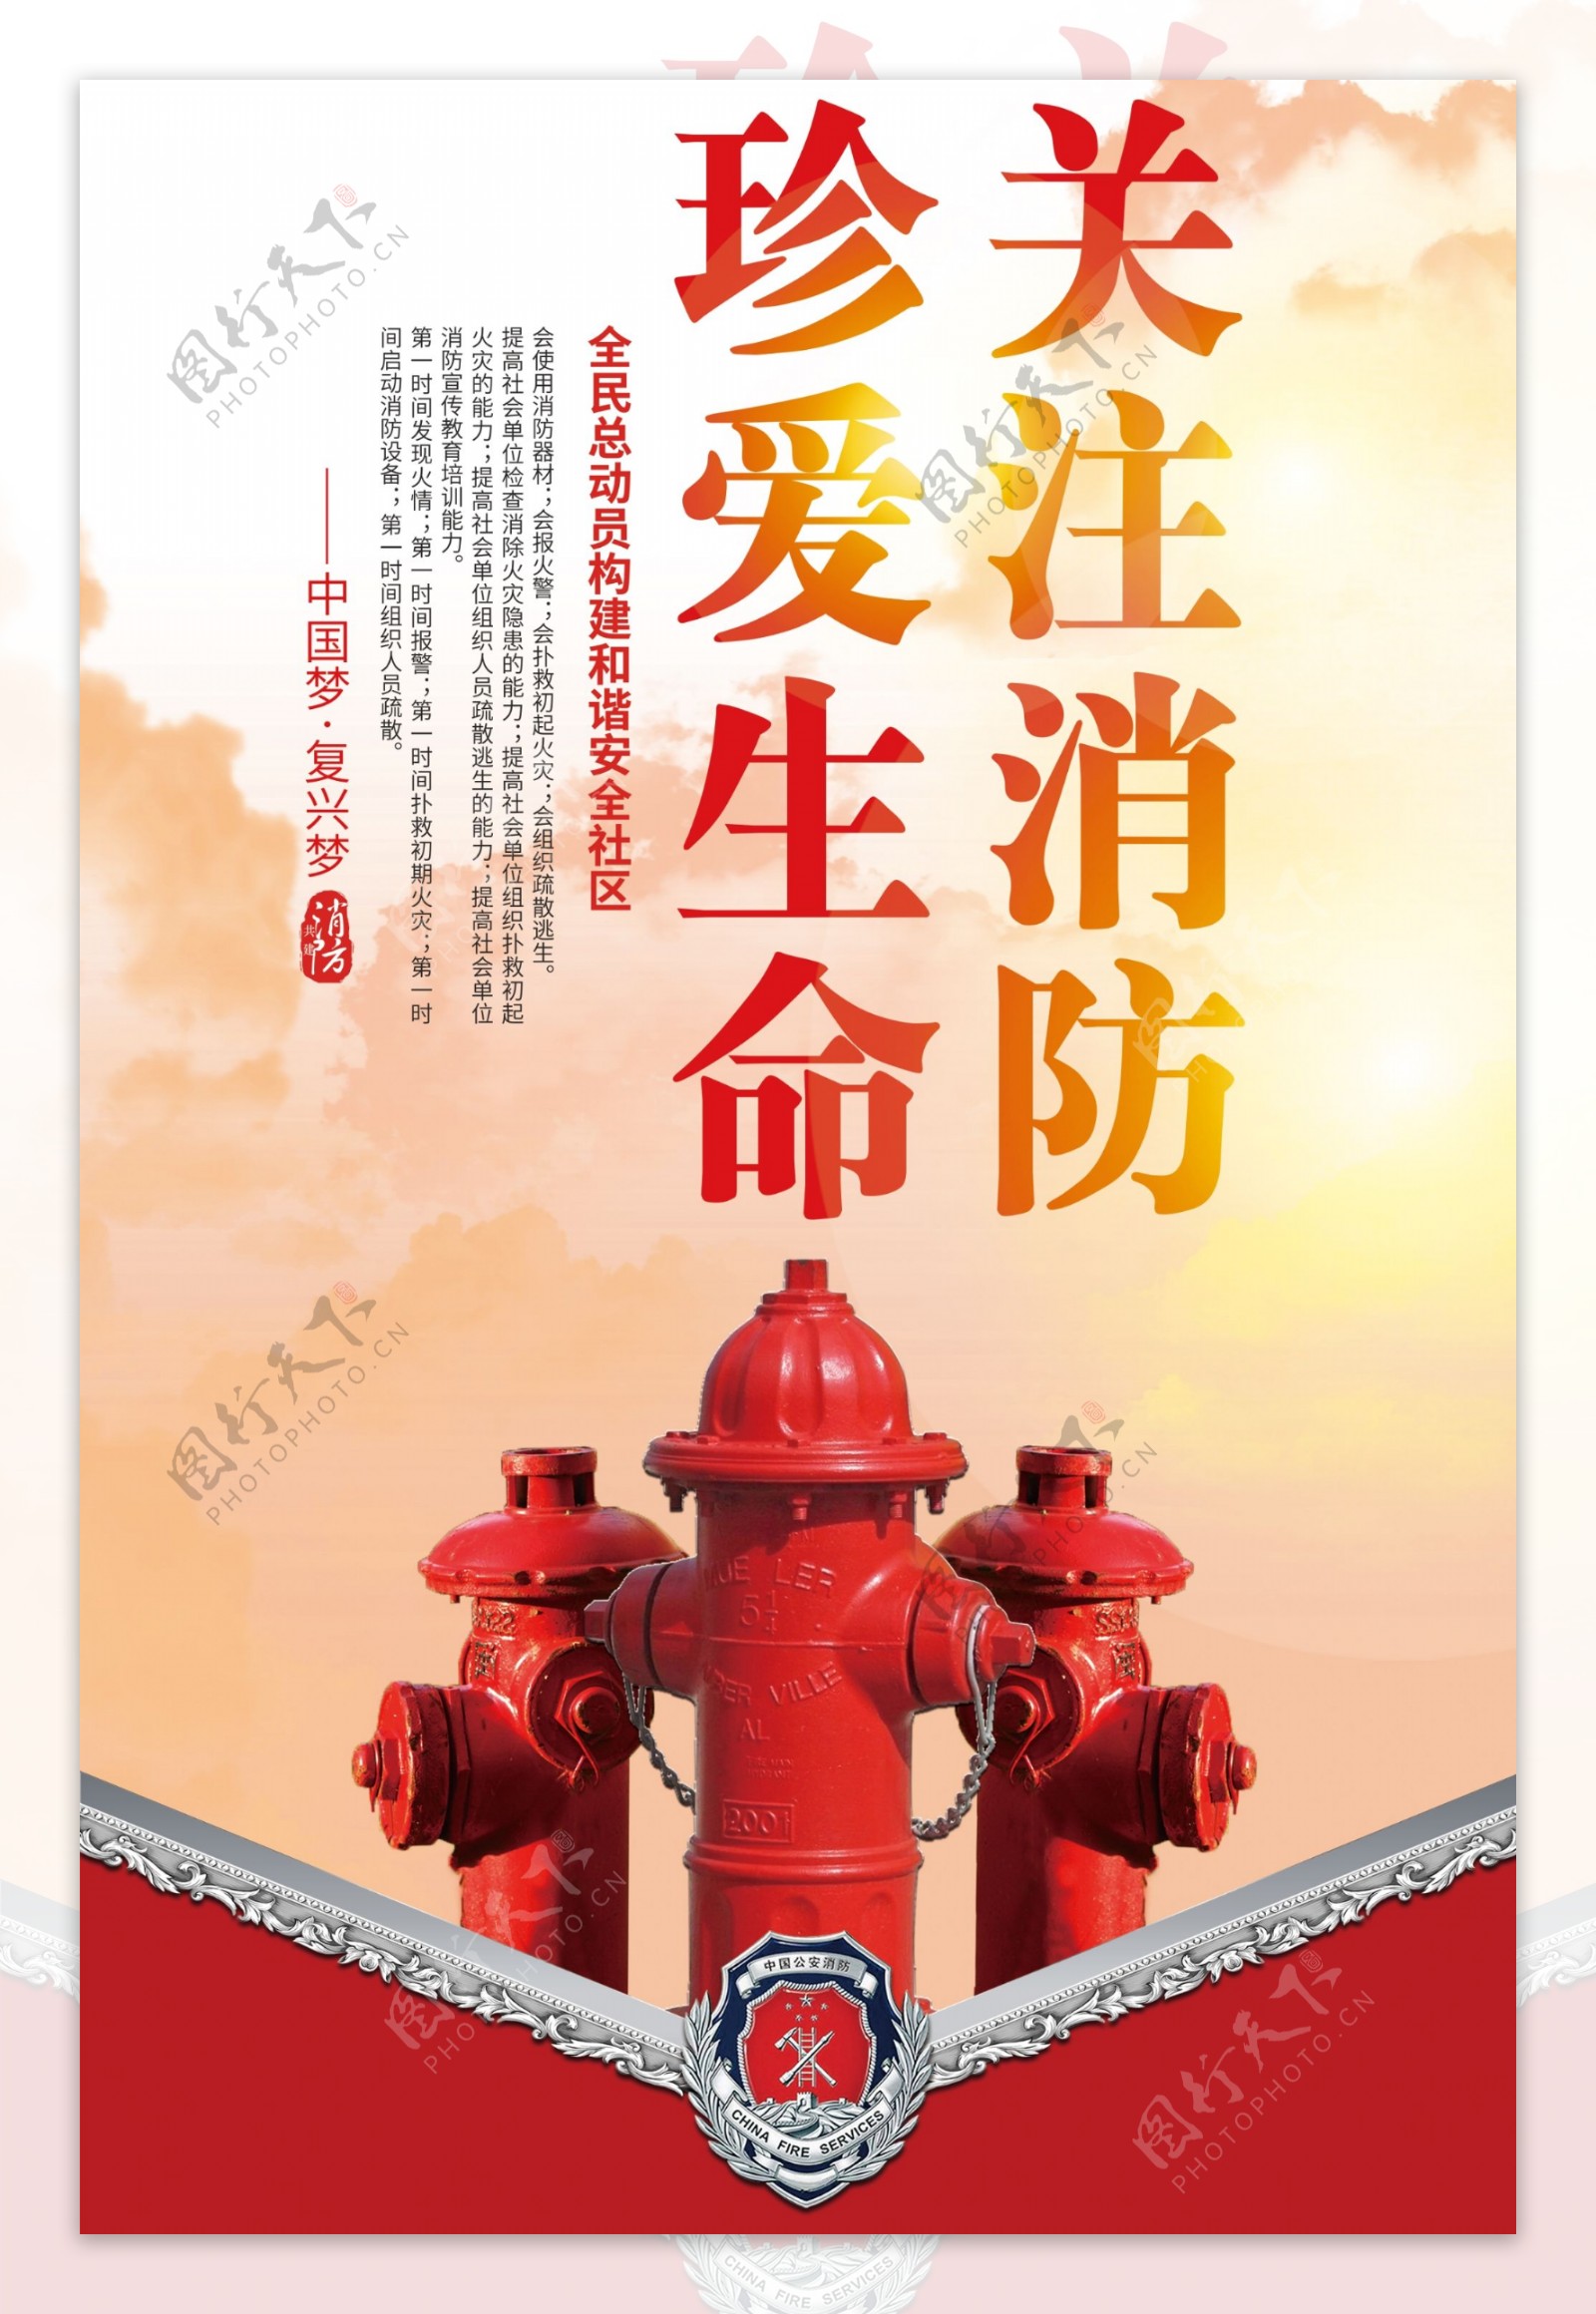 最新关注消防的宣传海报设计素材下载